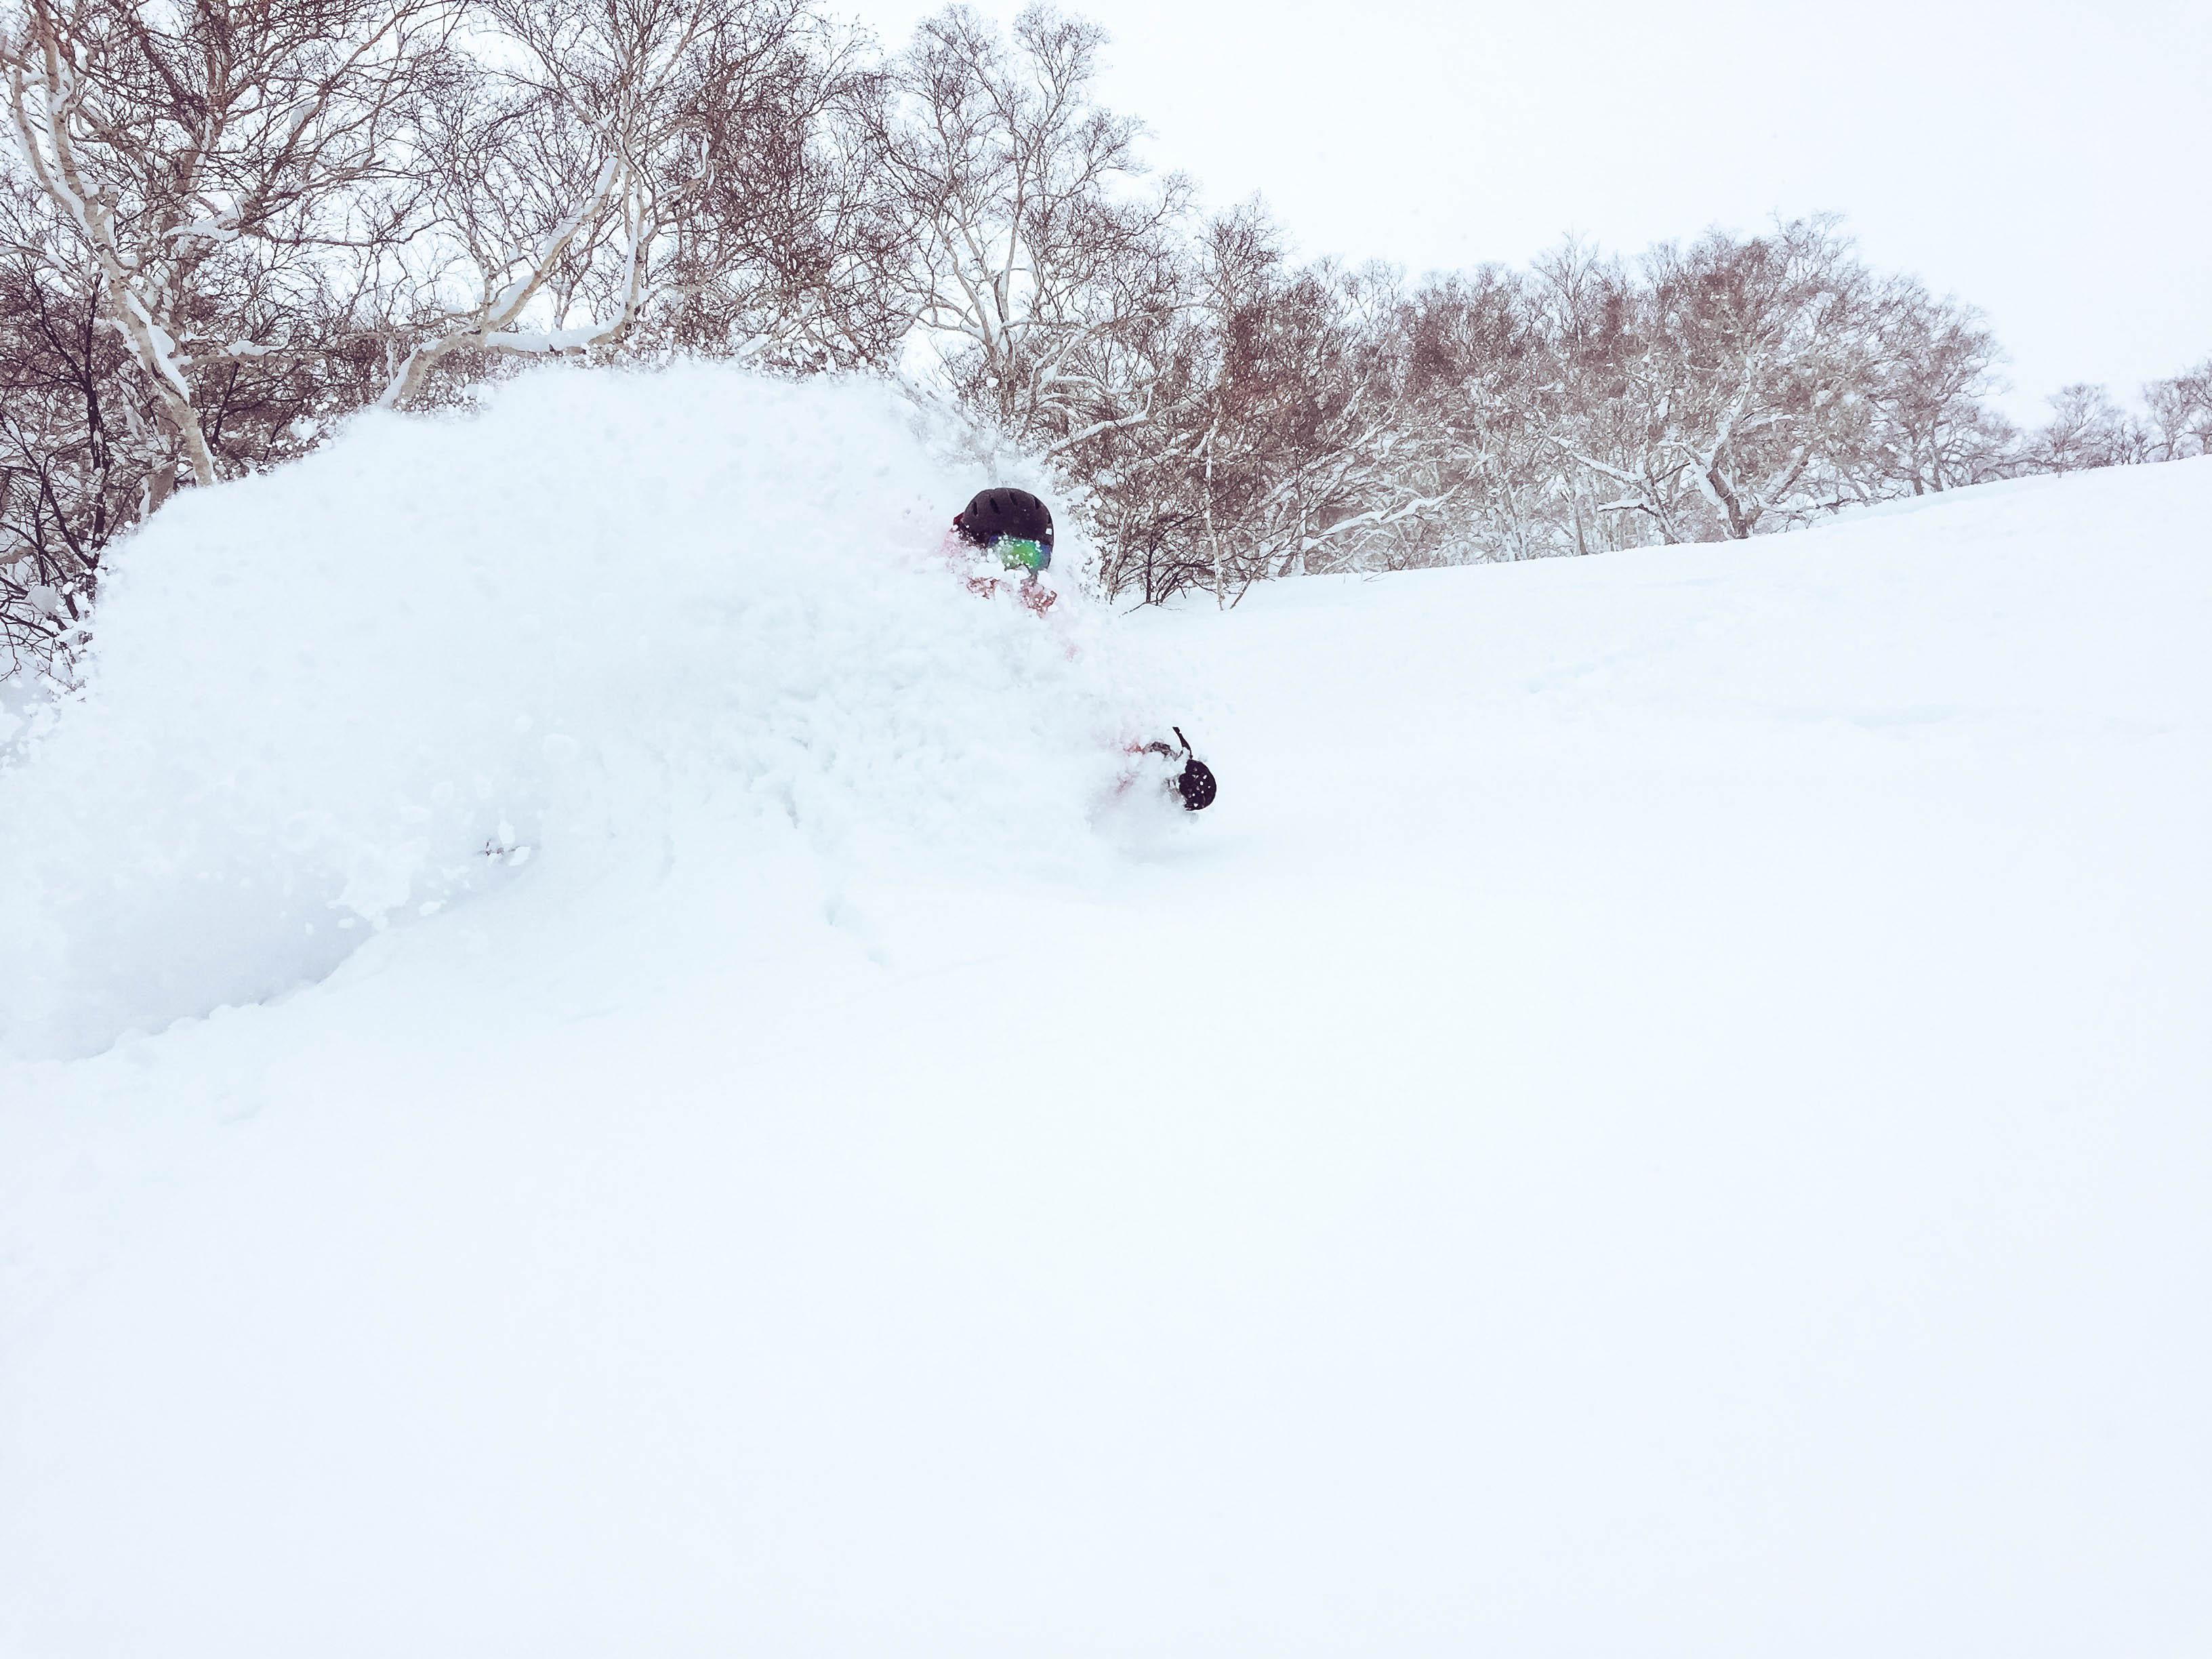 Niseko Japan - Powder Skiing